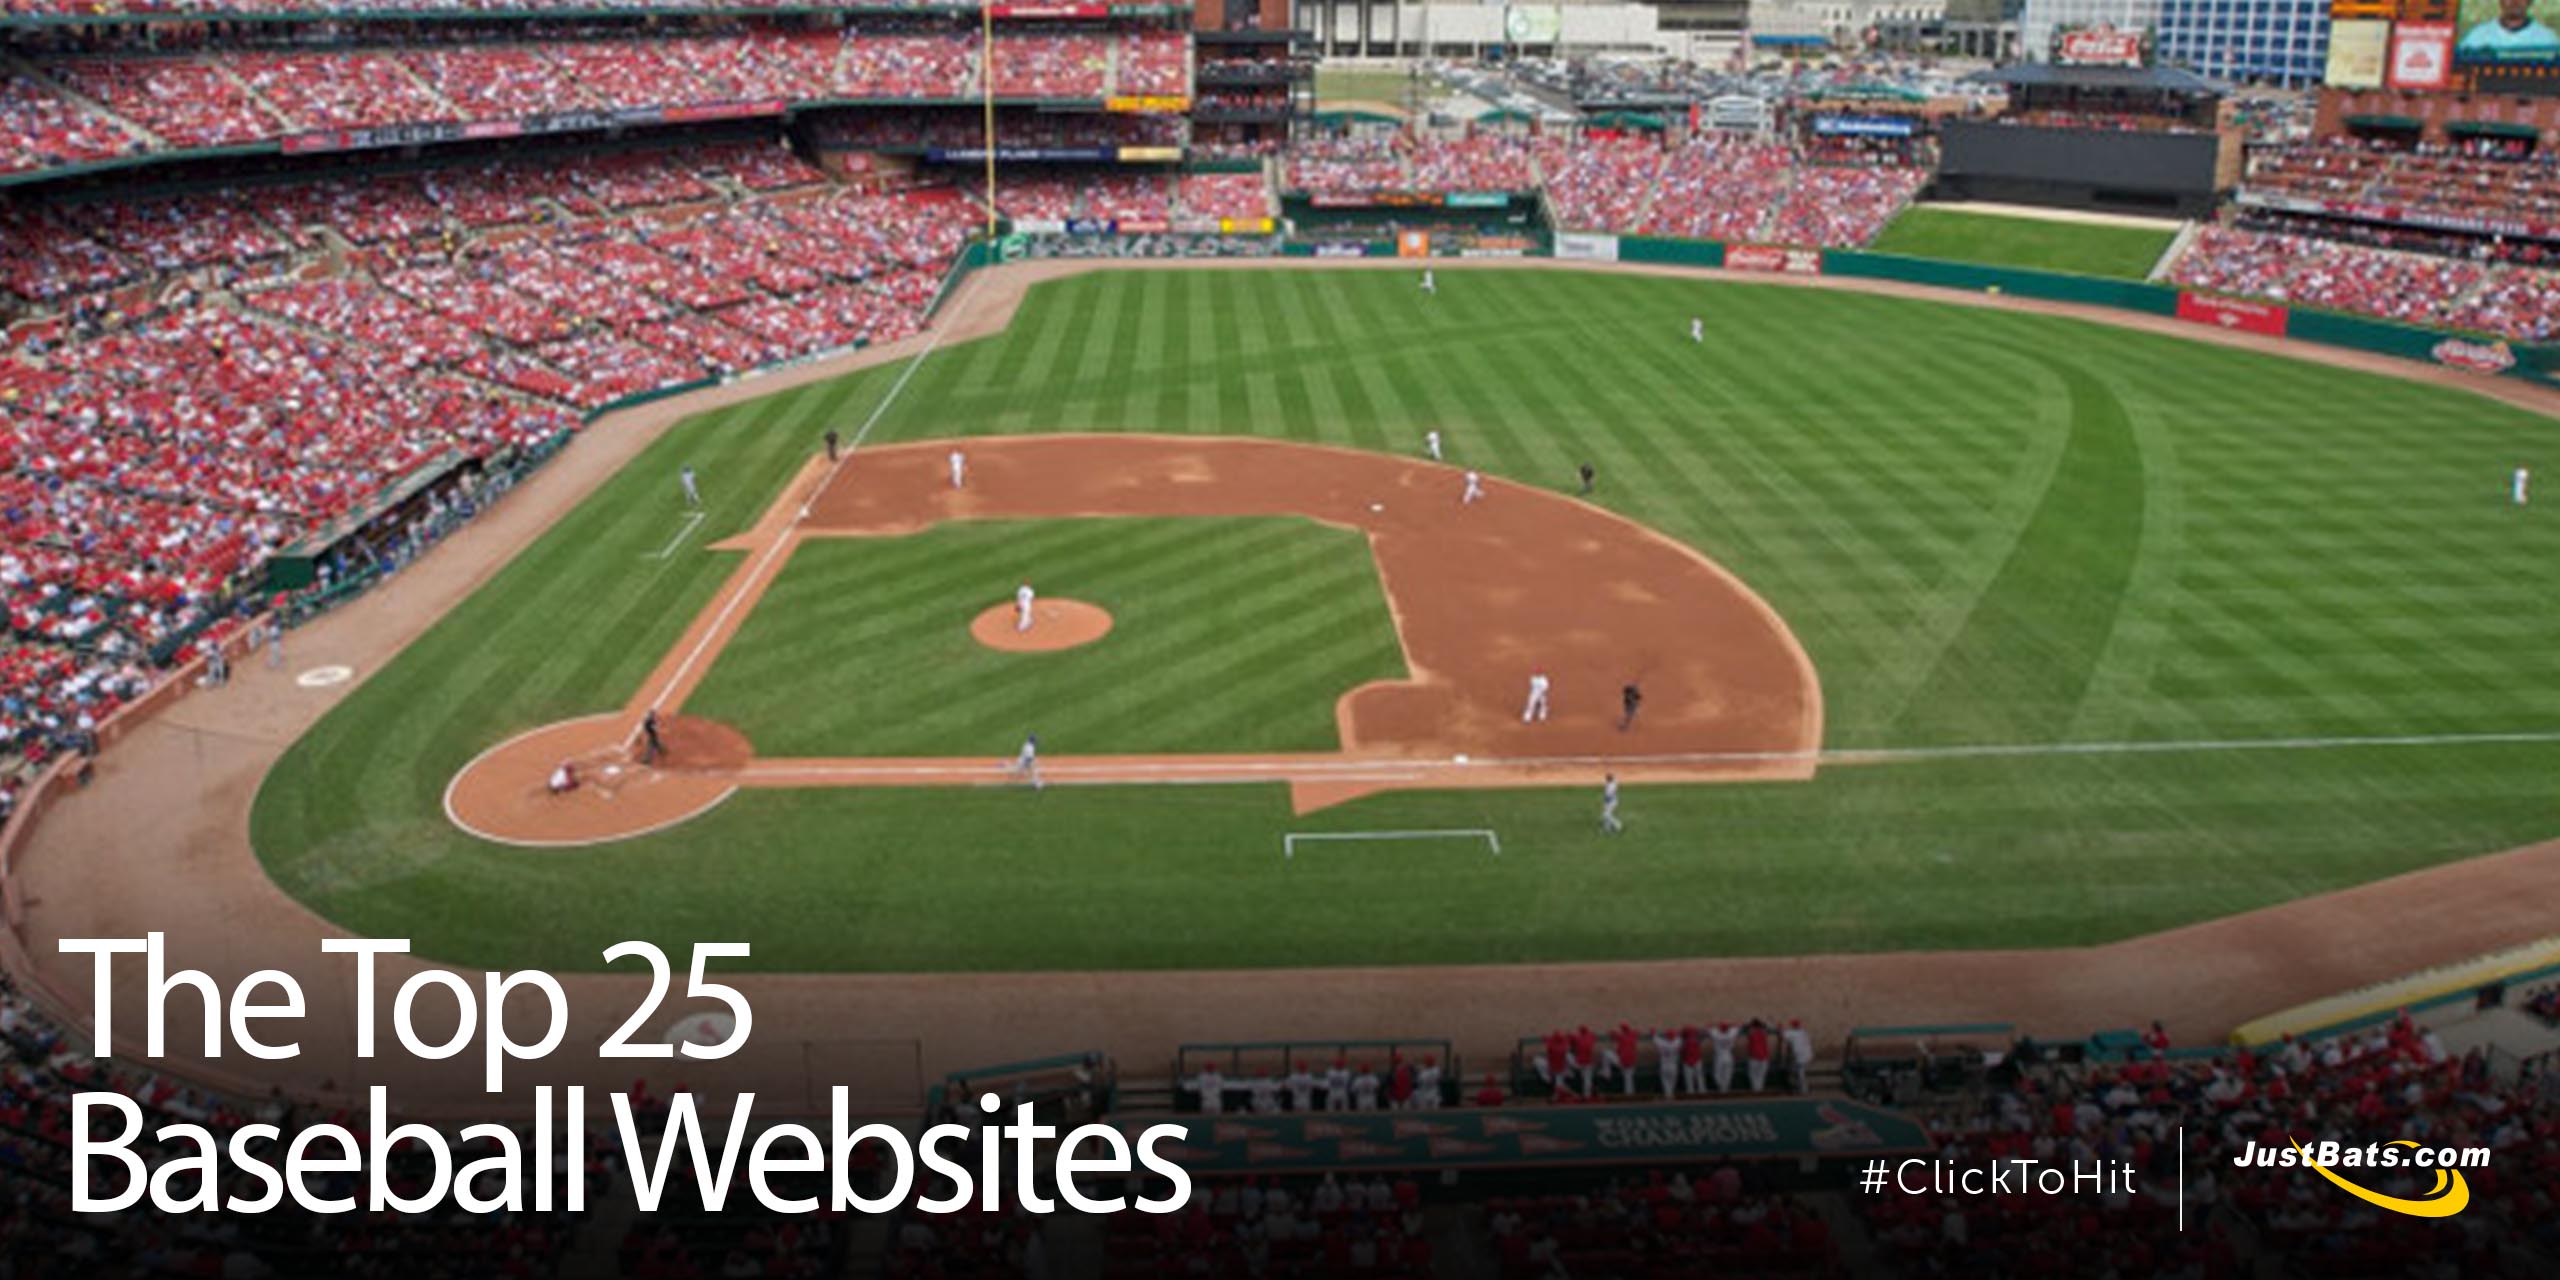 Best Baseball Websites - Blog.jpg